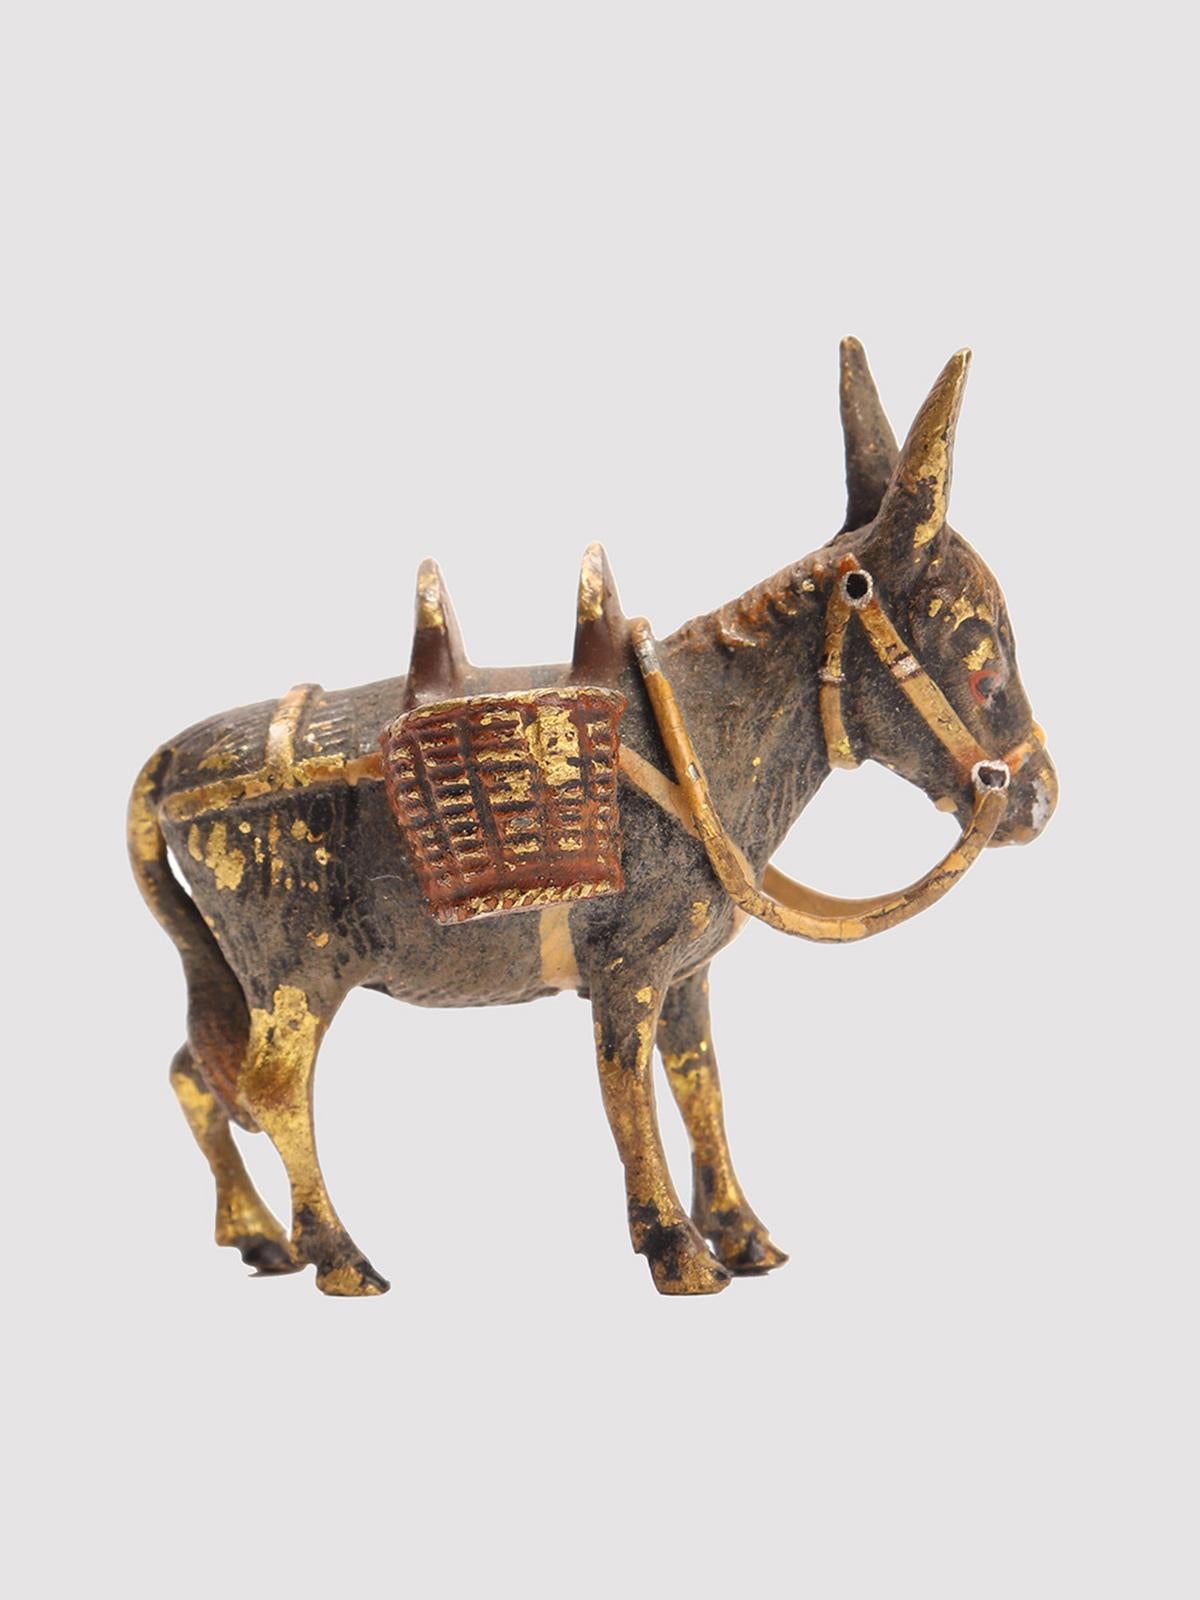 Bronze peint représentant une mule, peint en différentes couleurs. Wien, Autriche, vers 1890.